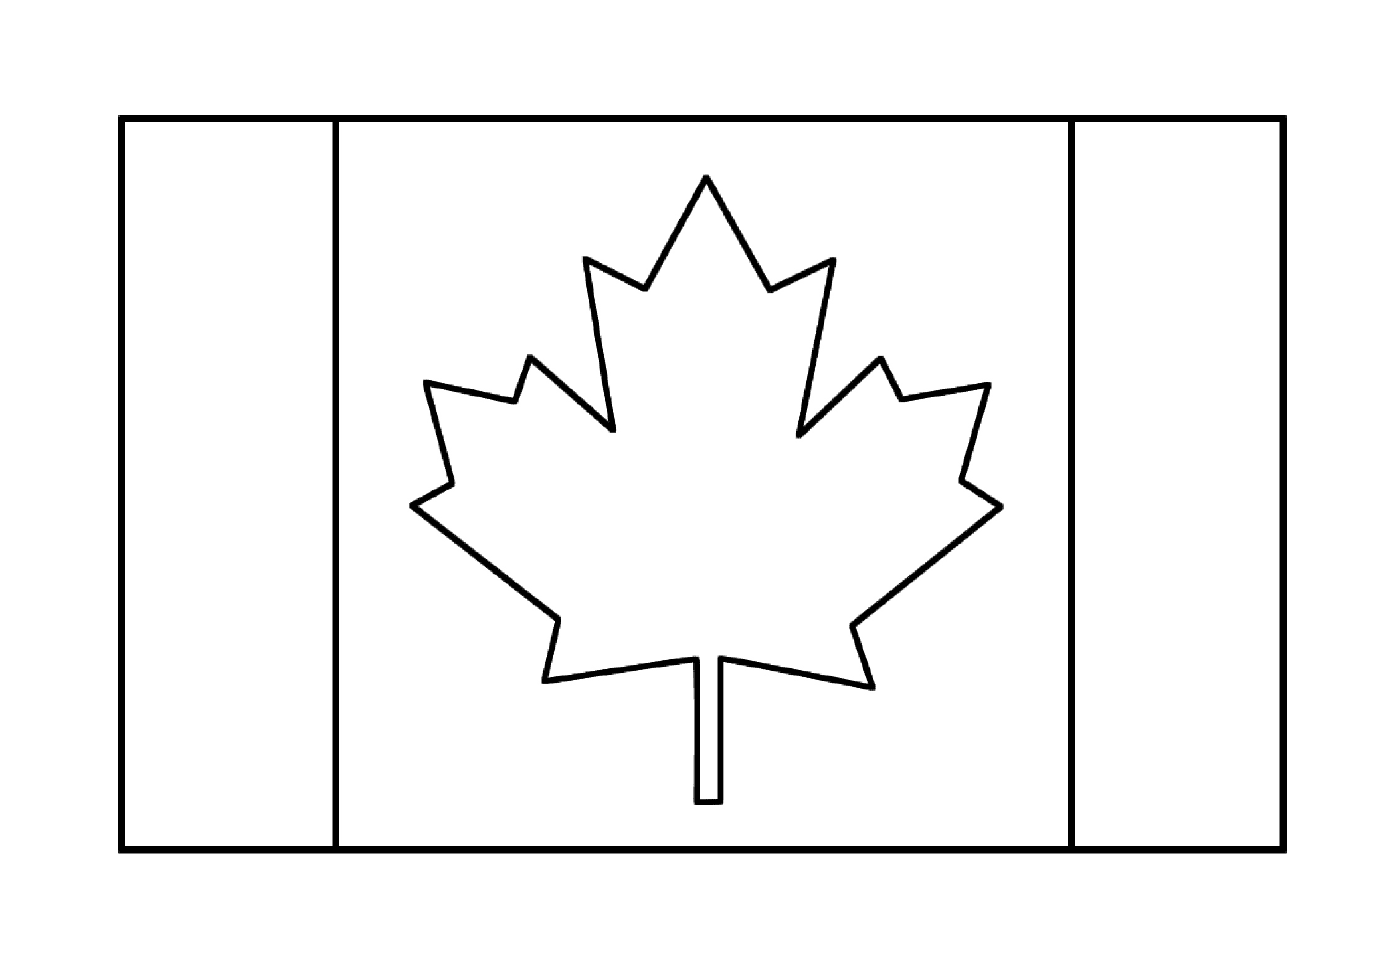  A Canadian Flag 